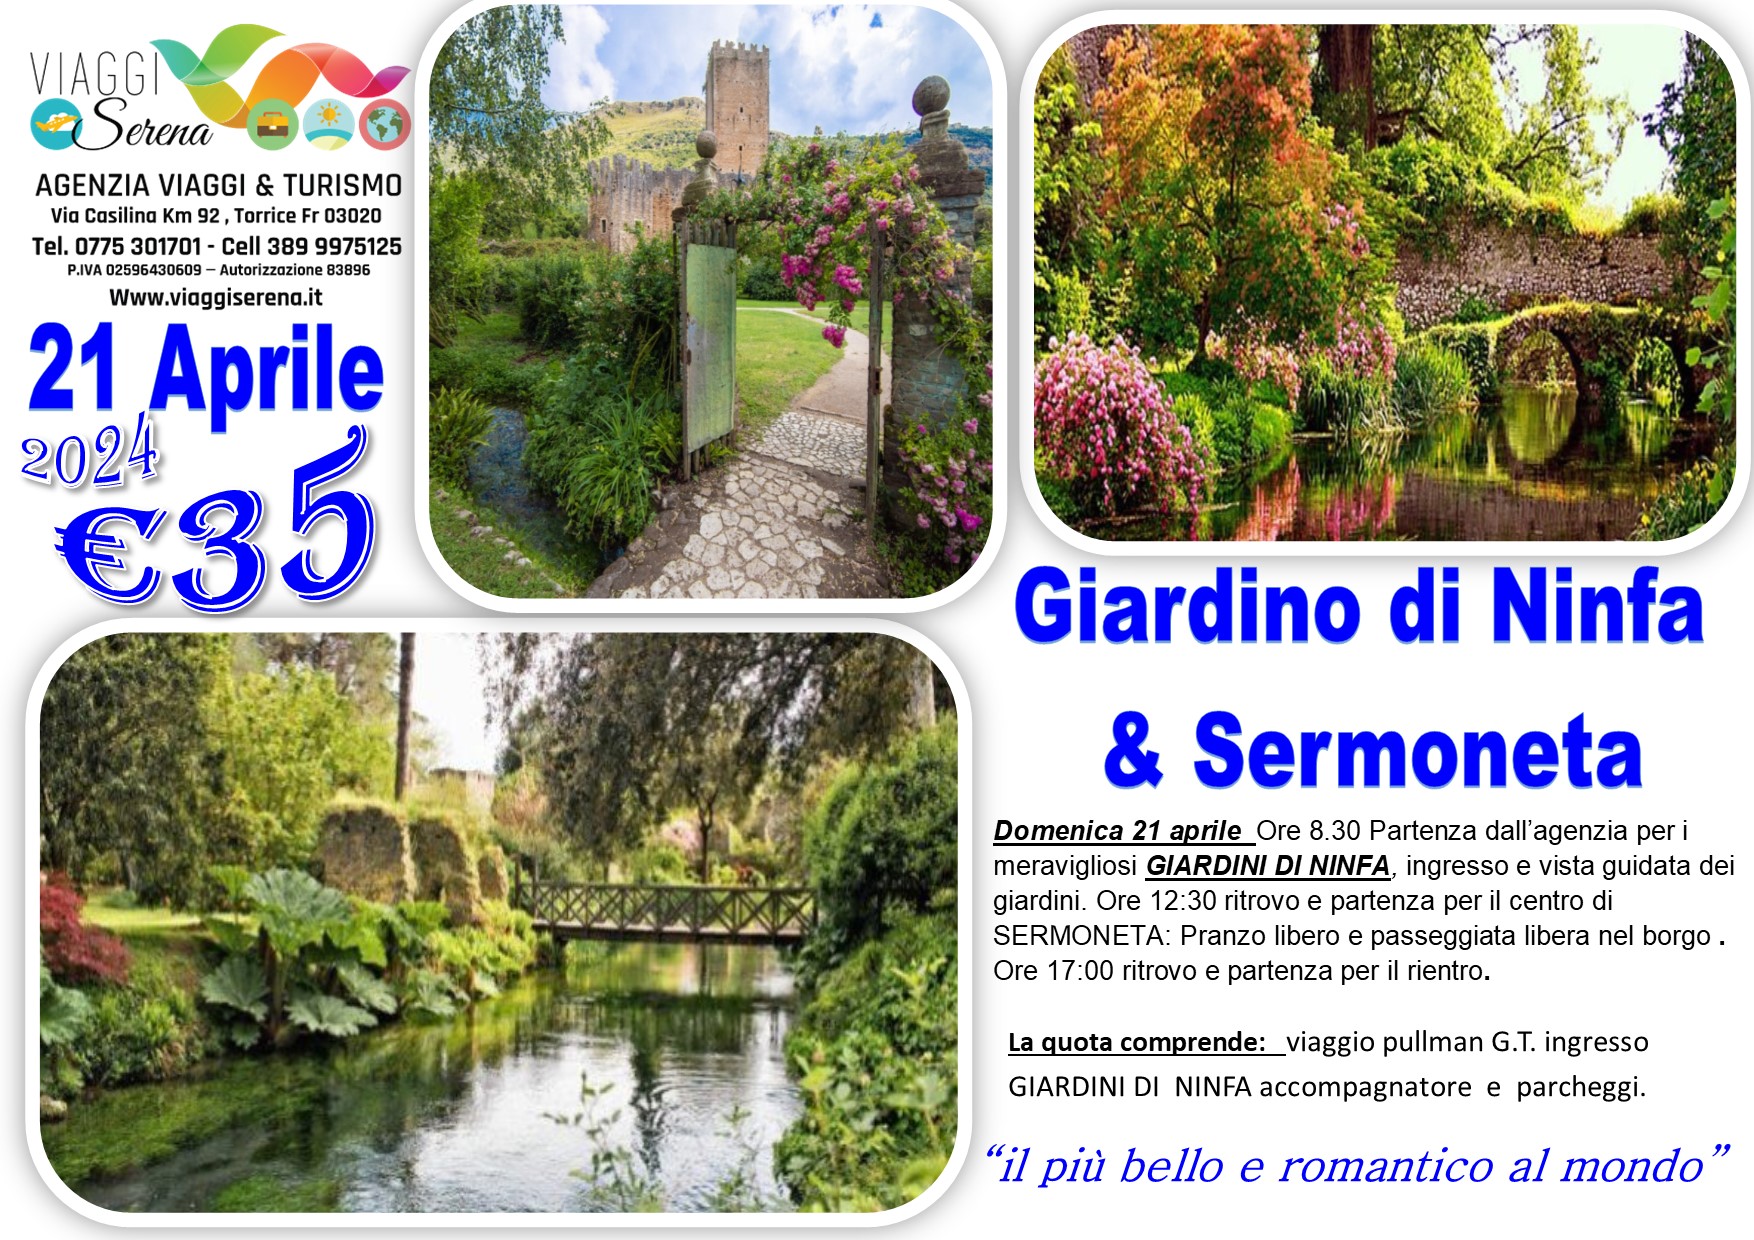 Viaggi di gruppo: Giardini di Ninfa & Sermoneta 21 Aprile €35,00